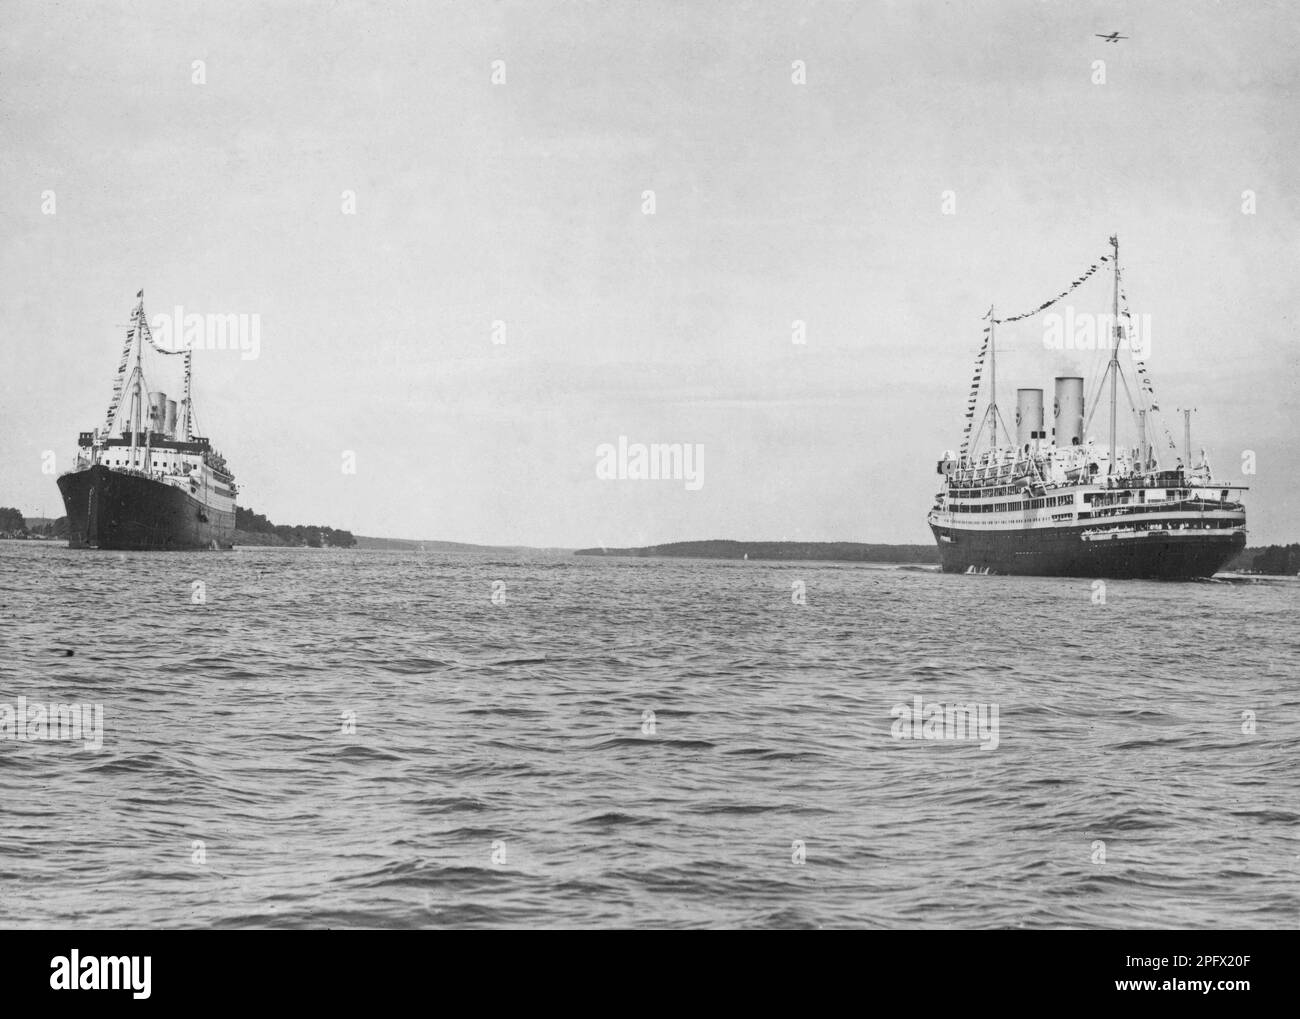 Die Schiffe M/S Kungsholm und M/S Gripsholm von Svenska Amerika Lines treffen sich im Juli 1930 im Stockholmer Archipel. Die Schiffe, die in den 1920er Jahren gebaut wurden, waren Schwesterschiffe und die modernsten Schiffe auf dem Atlantik zu dieser Zeit. Gripsholms mit einer Länge von 168,5 Metern und einer Breite von 22,7 Metern und Kungsholm, das 181,32 und 22 Meter breit war, waren wahrhaft schwimmende Luxuspaläste und Berühmtheiten der Zeit, die auf ihnen reiste. Beide Schiffe beendeten ihre Tage als Schrott. Stockfoto